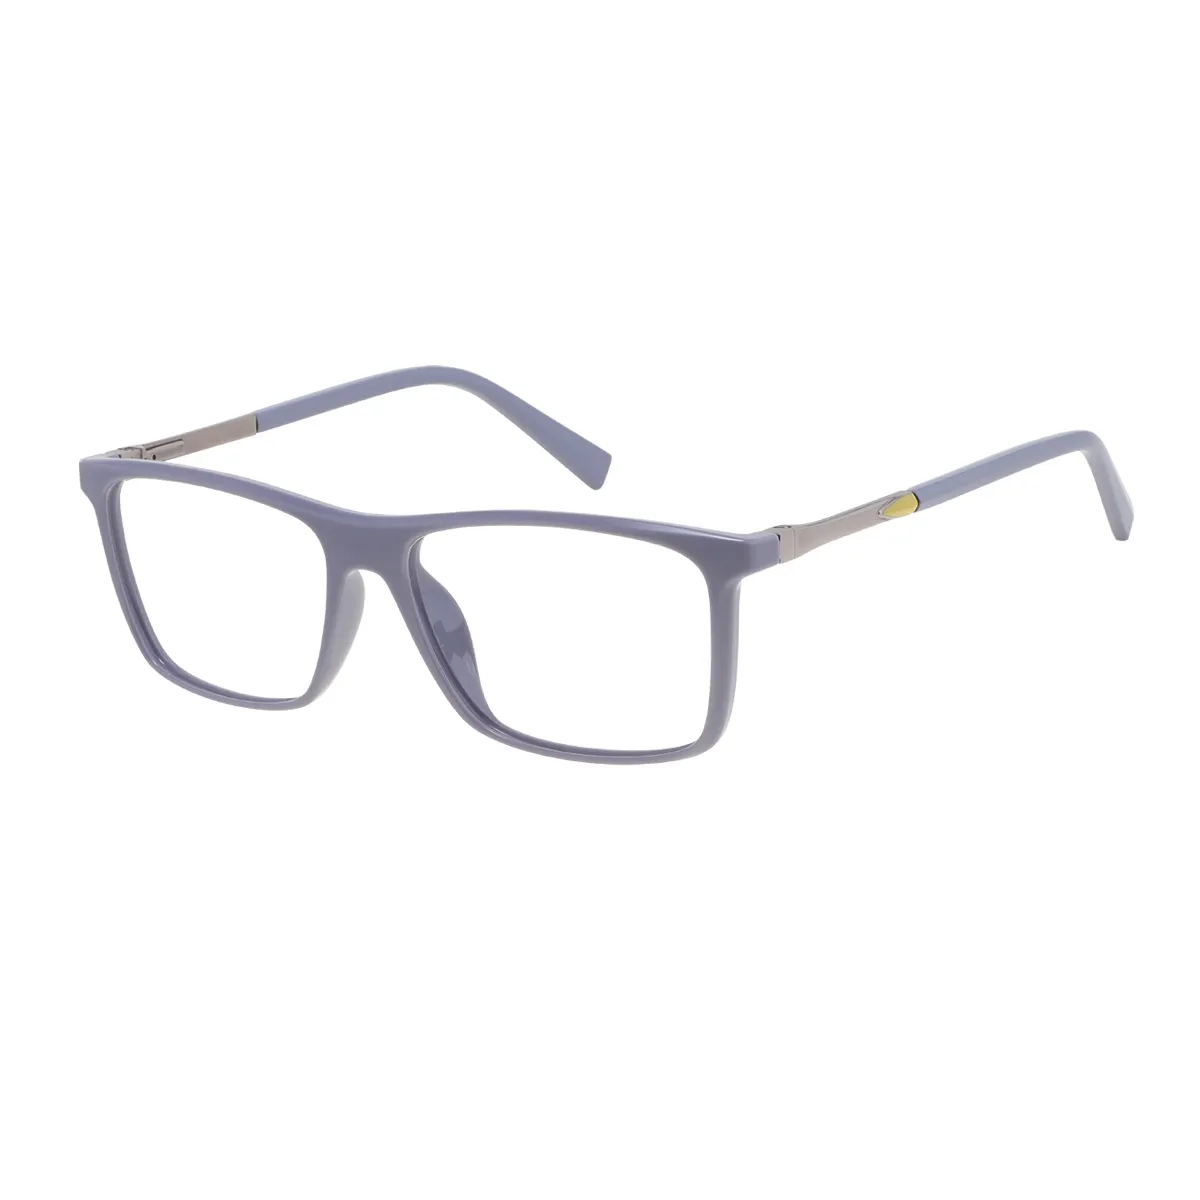 Weber - Rectangle Gray-silver Glasses for Men & Women